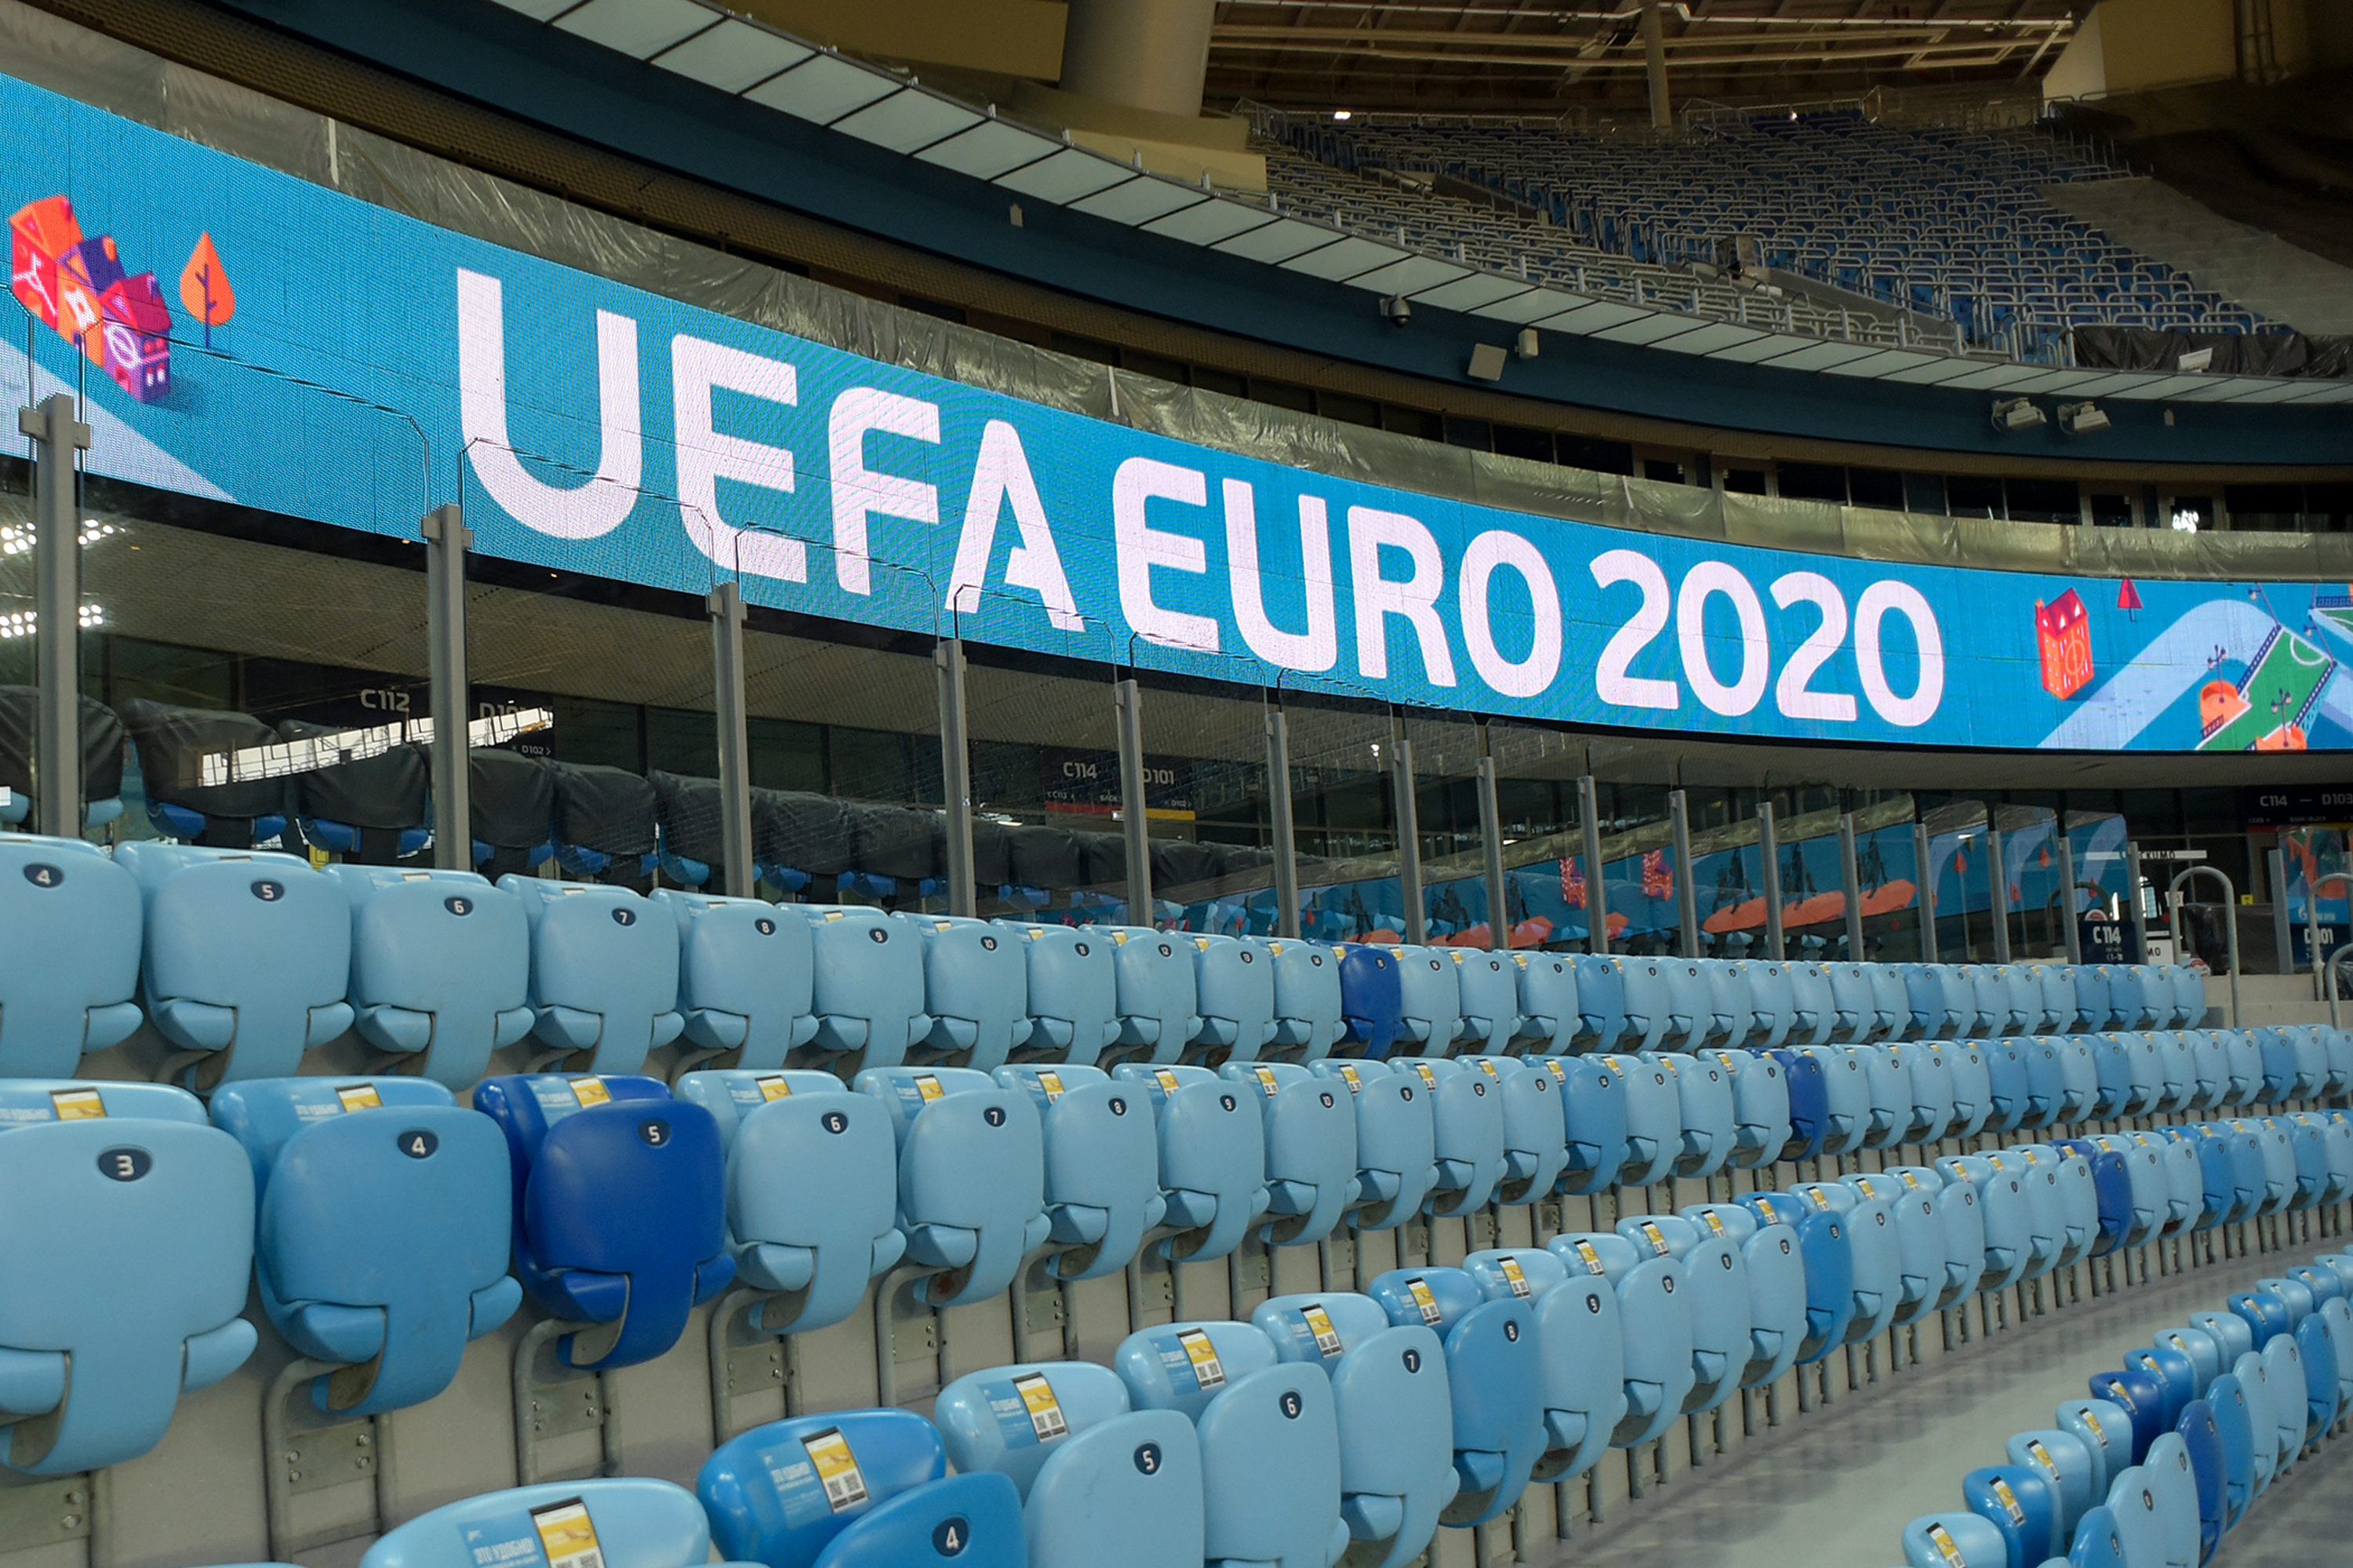 Euro 2020 przeniesione. Gdzie odbędą się mistrzostwa Europy w 2021? -  Przegląd Sportowy